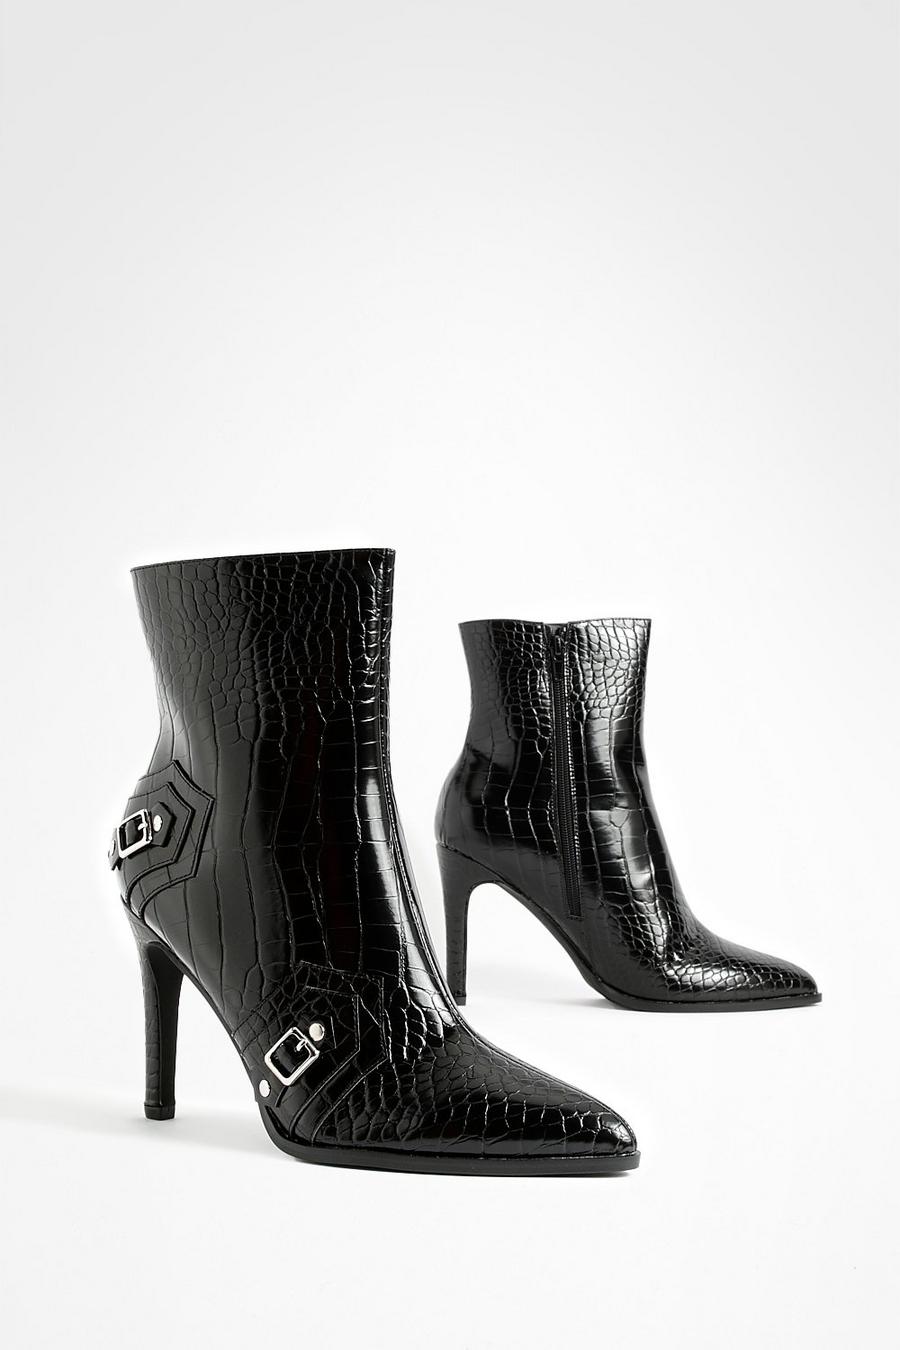 Black Croc Stud Detail Stiletto Ankle Boots  